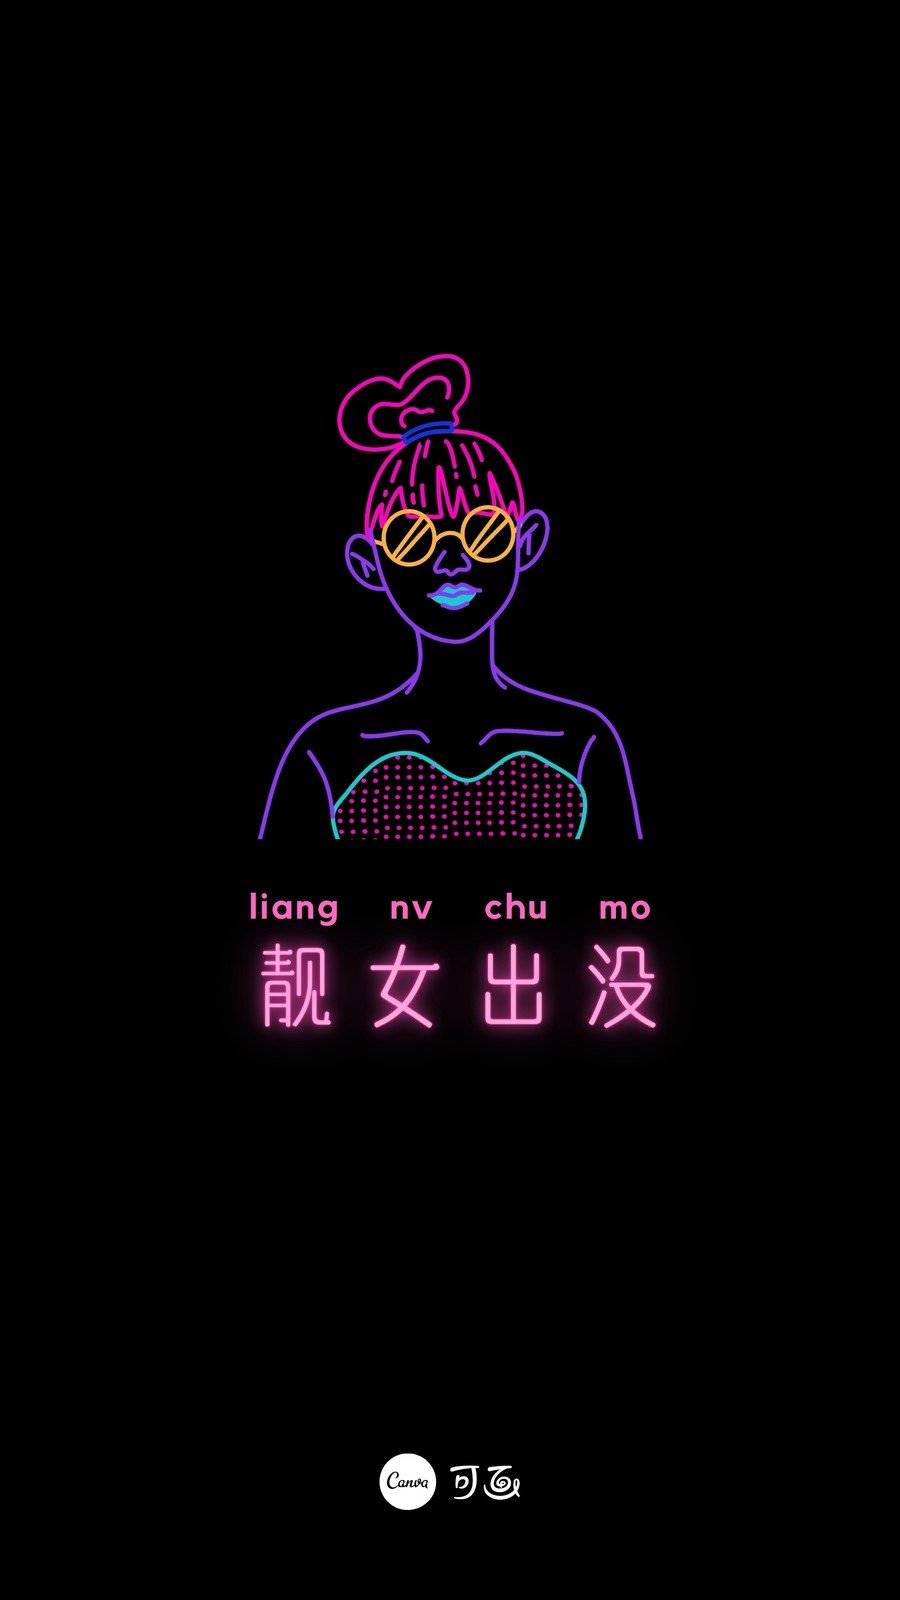 黑粉色人物肖像活力现代新潮炫彩霓虹线条插画元素现代艺术分享中文手机壁纸 模板 Canva可画